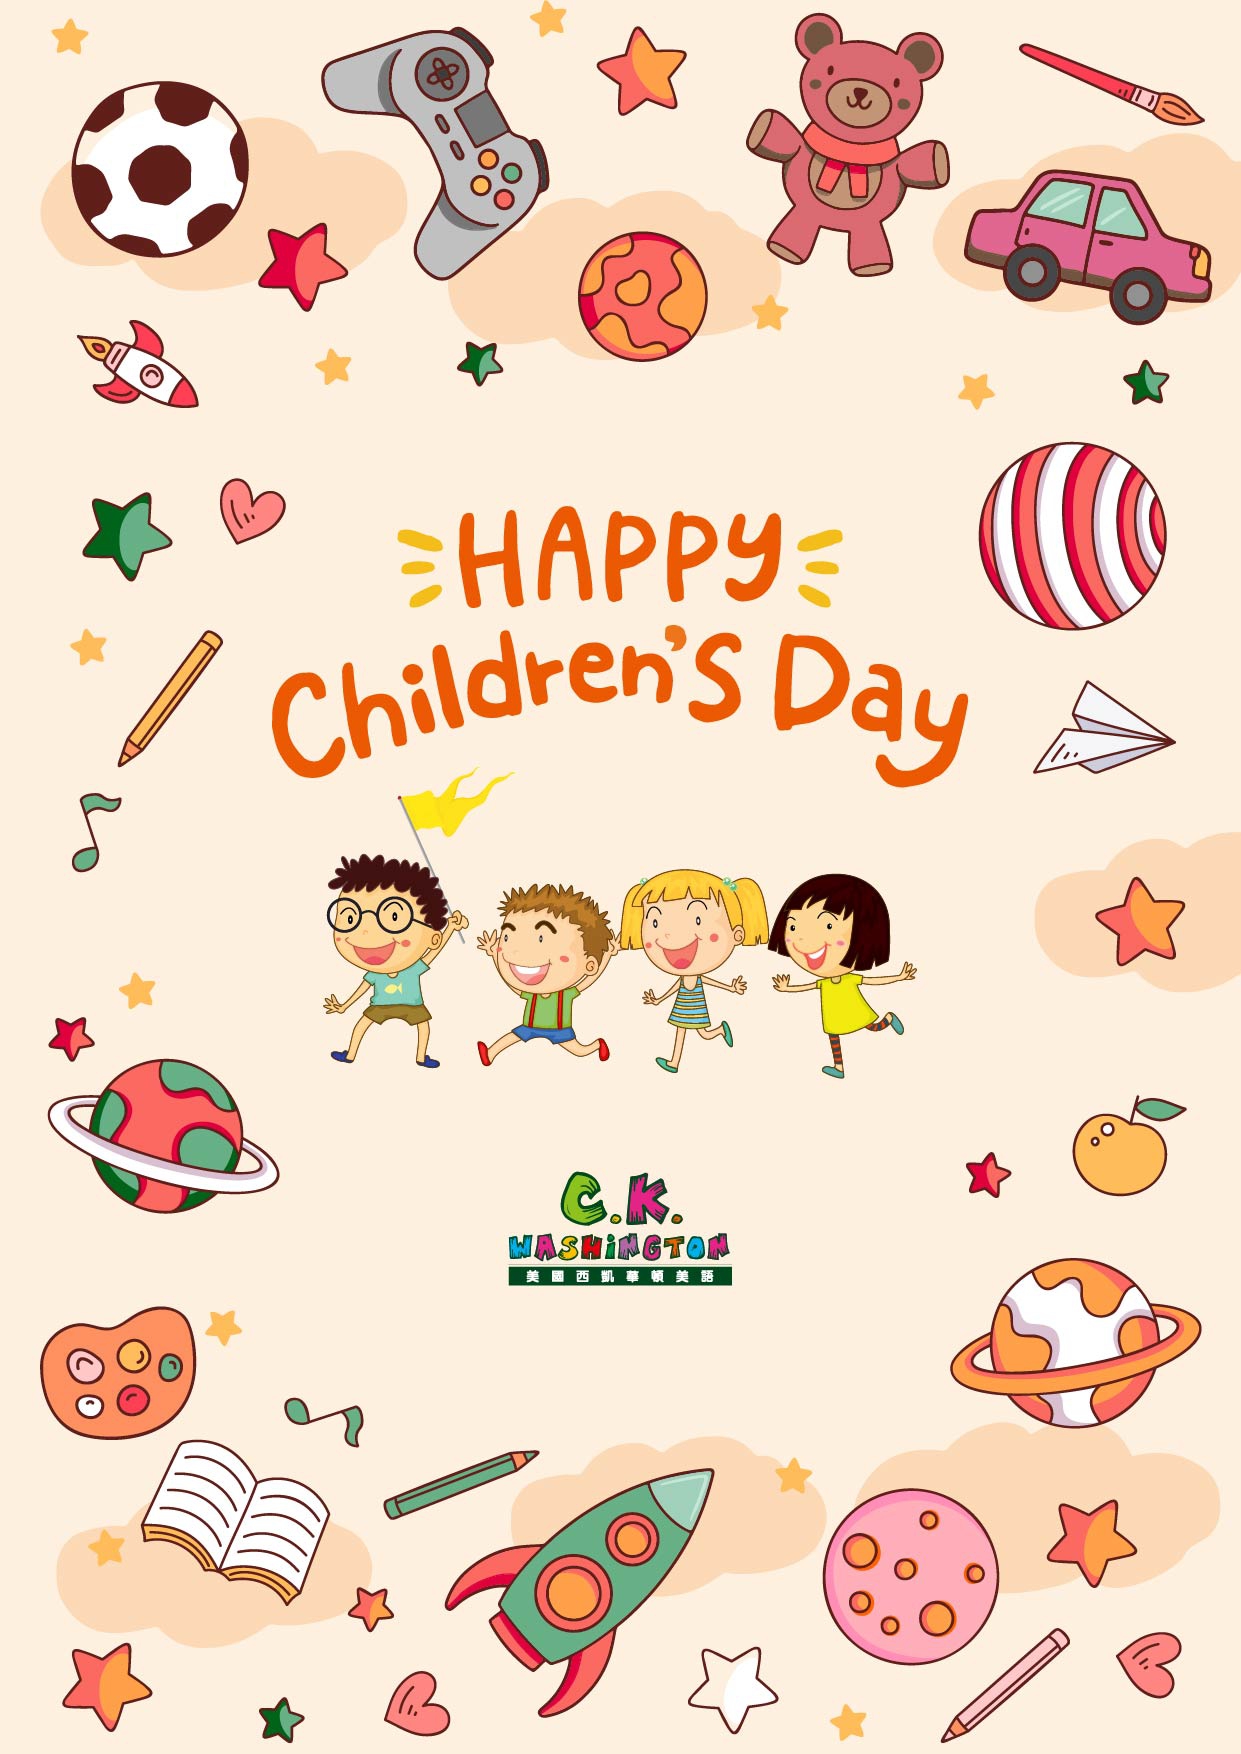 兒童節快樂! Happy Children's Day!